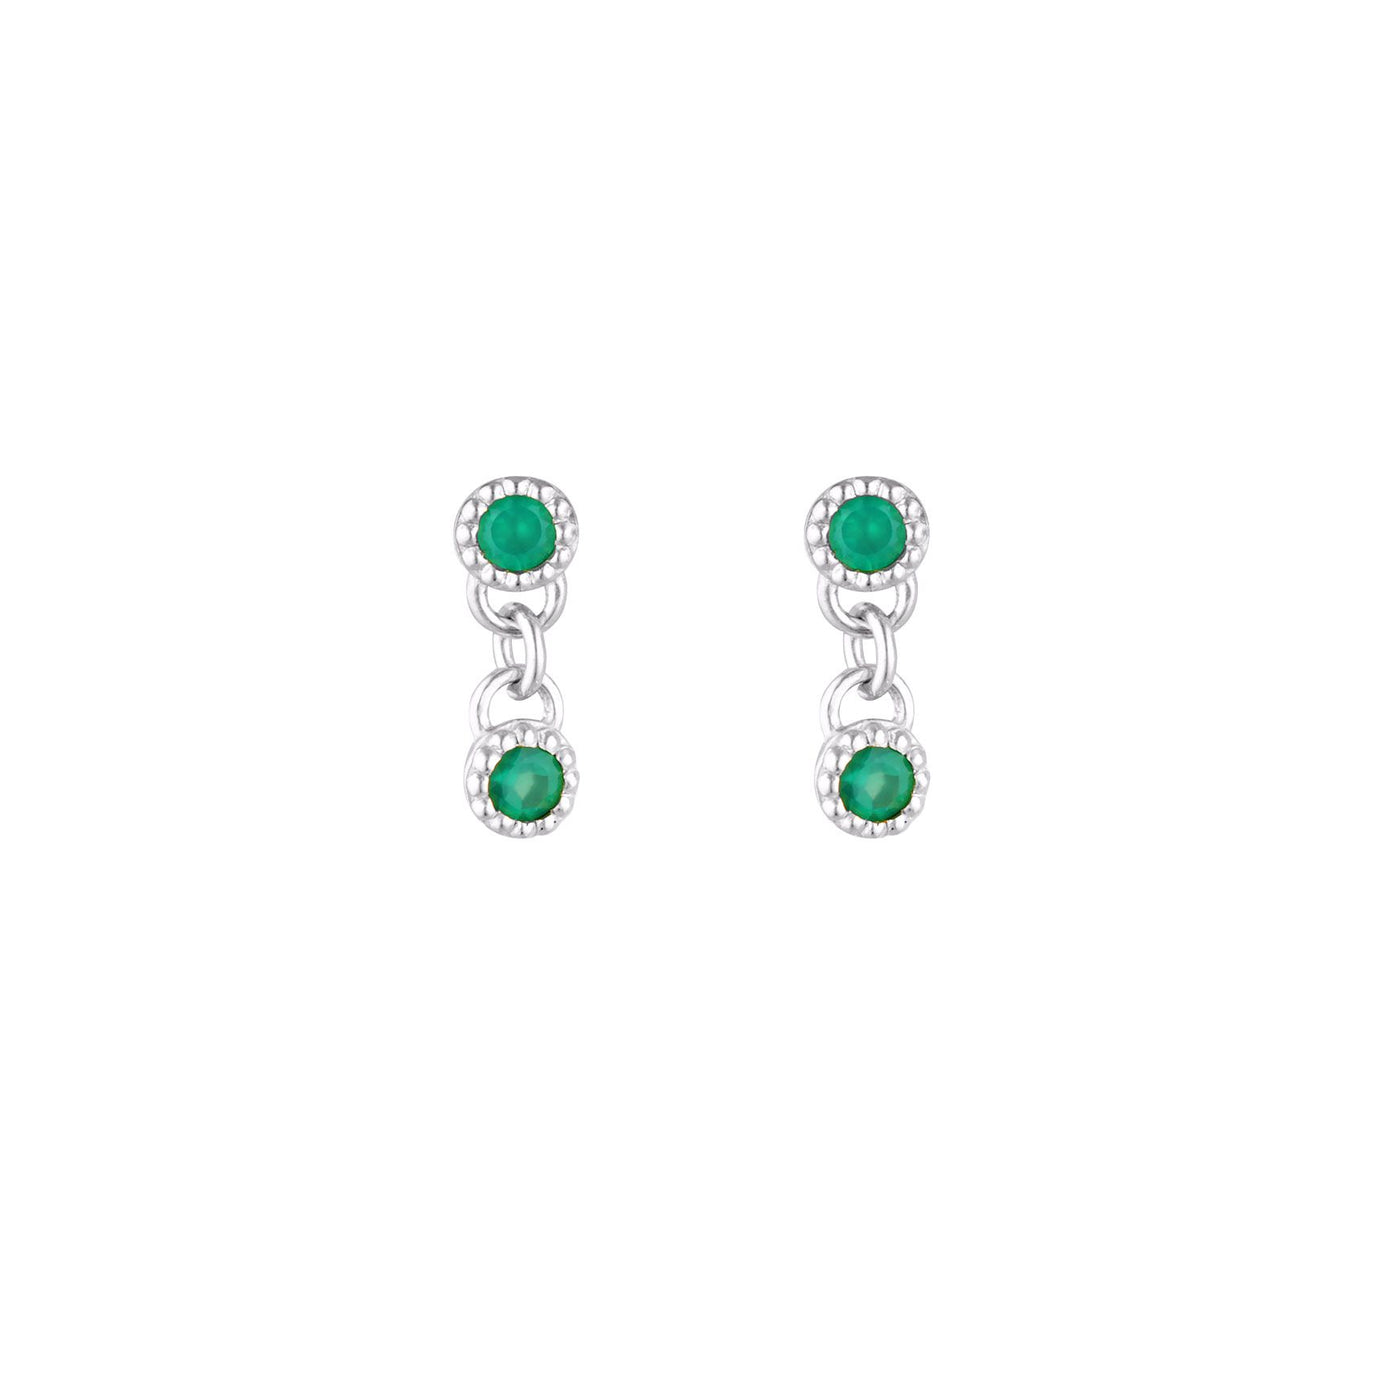 Linda Tahija Green Onyx Meteor Stud Earrings, Silver